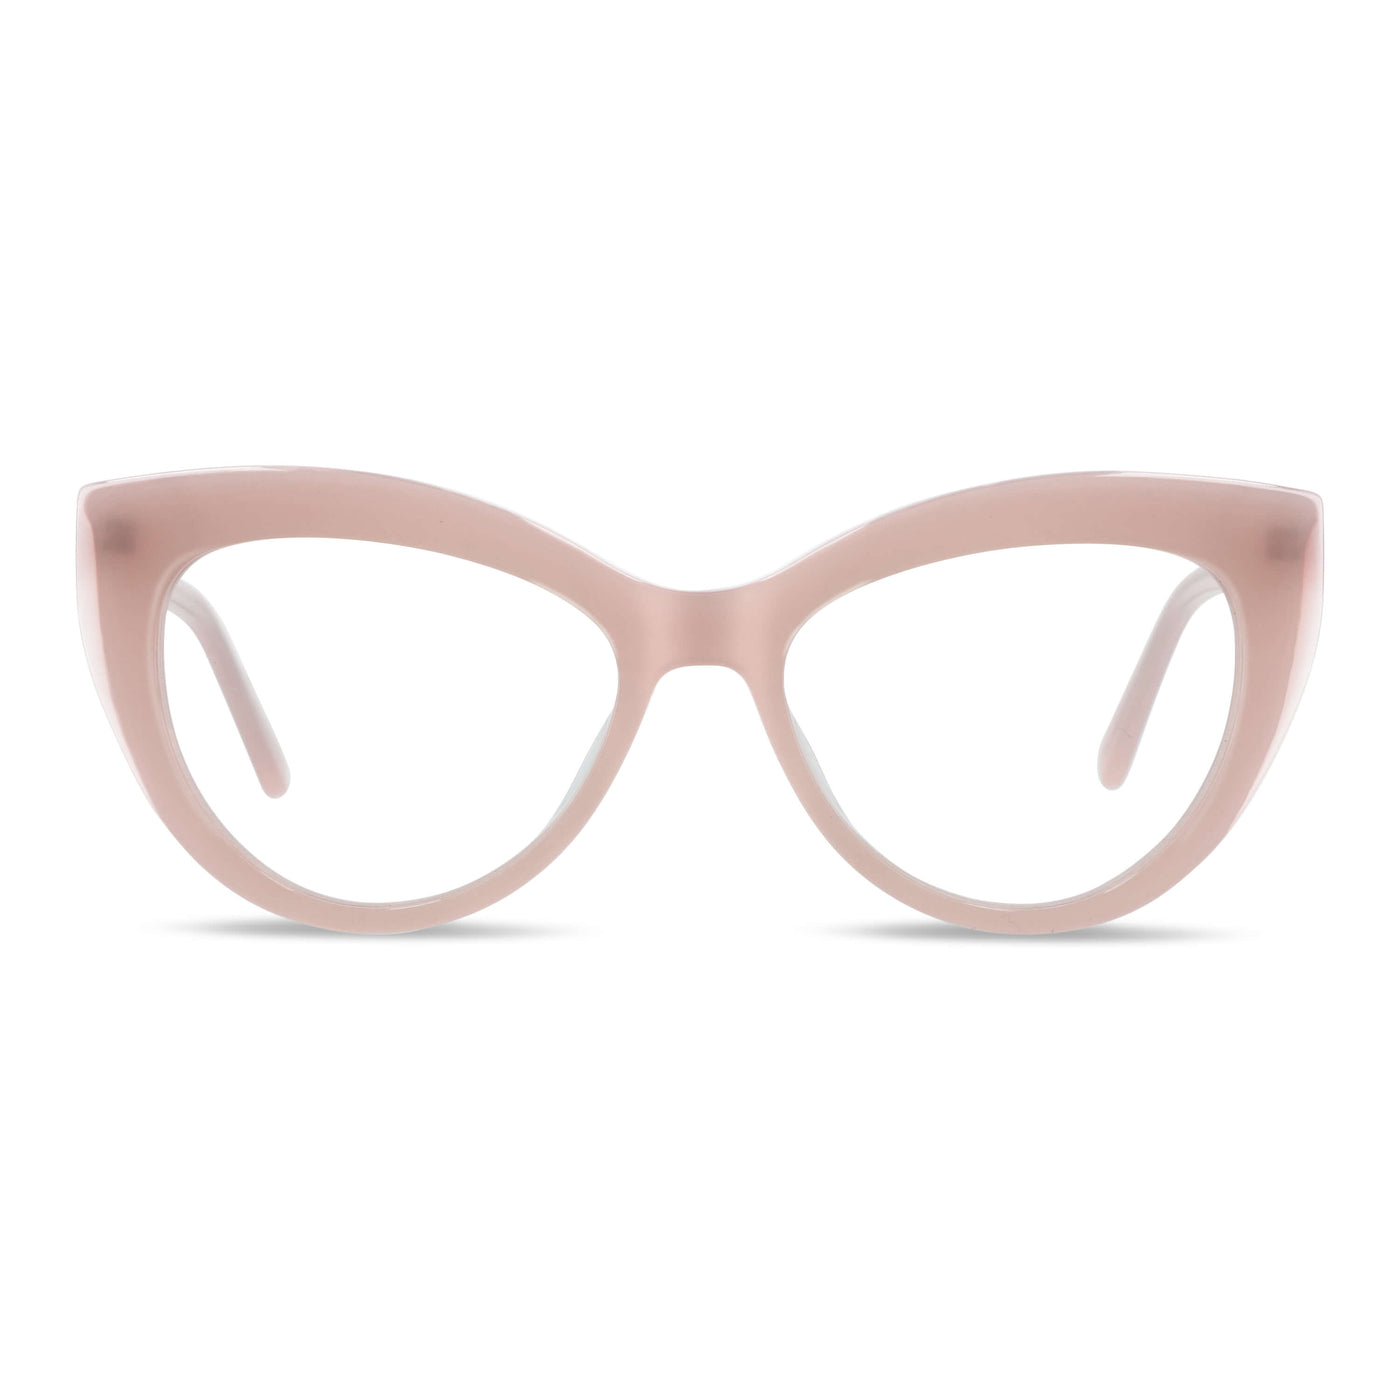 anteojos lentes agatados mujer cara redonda grande receta distribuidor mayorista opticas sustentable multifocales rosado.jpg